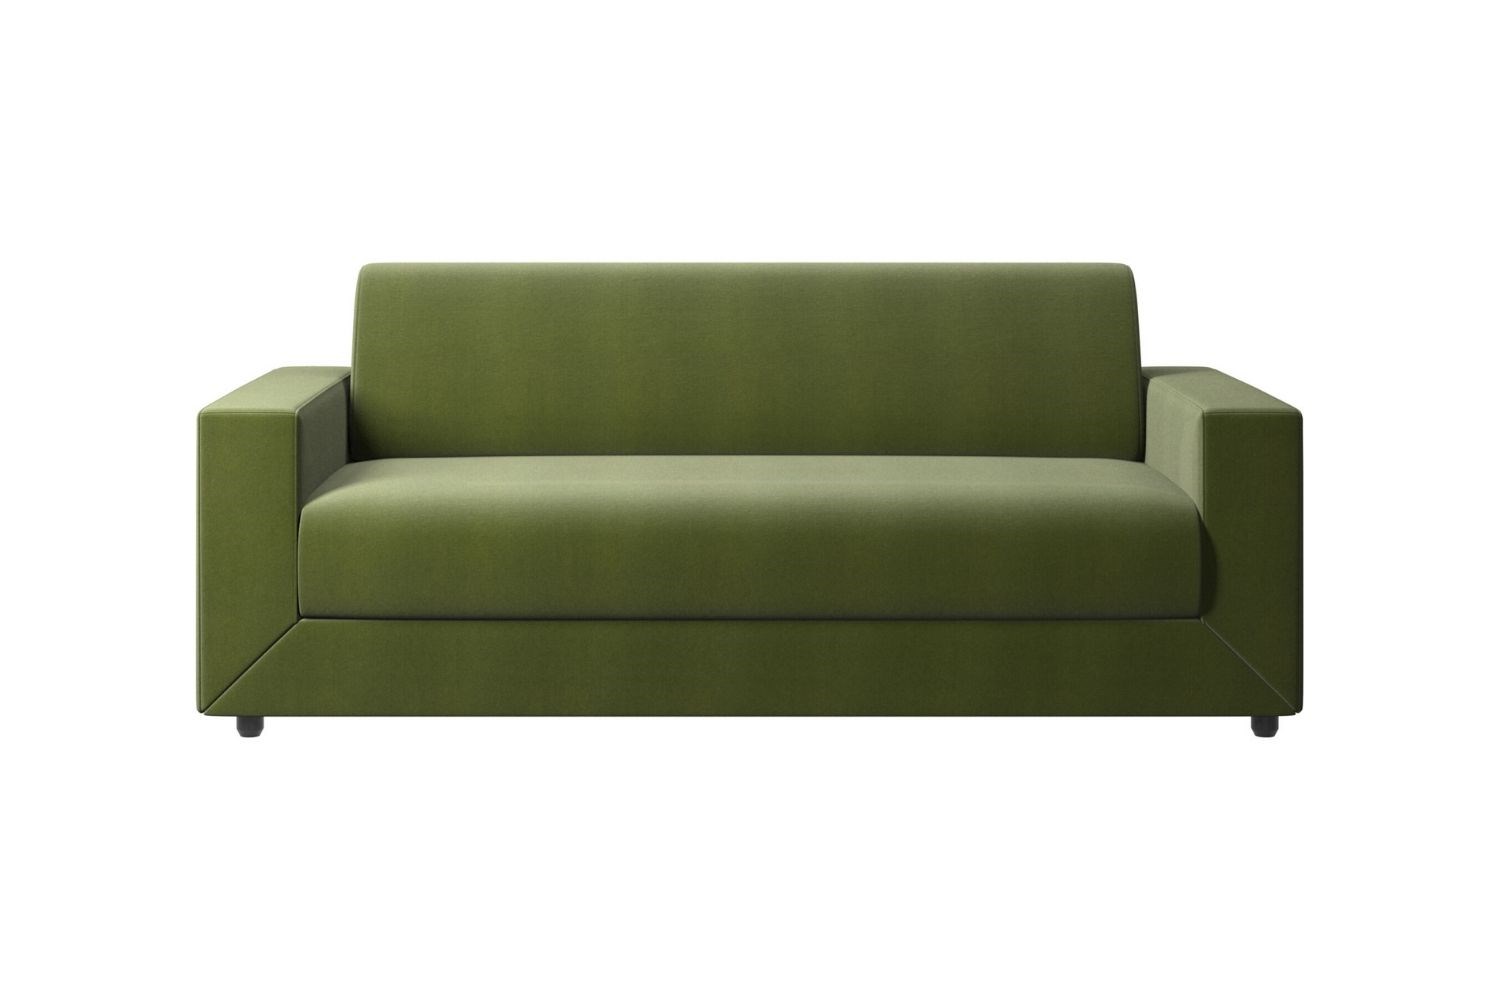 Sofa Bed6 ?width=720¢er=0.0,0.0